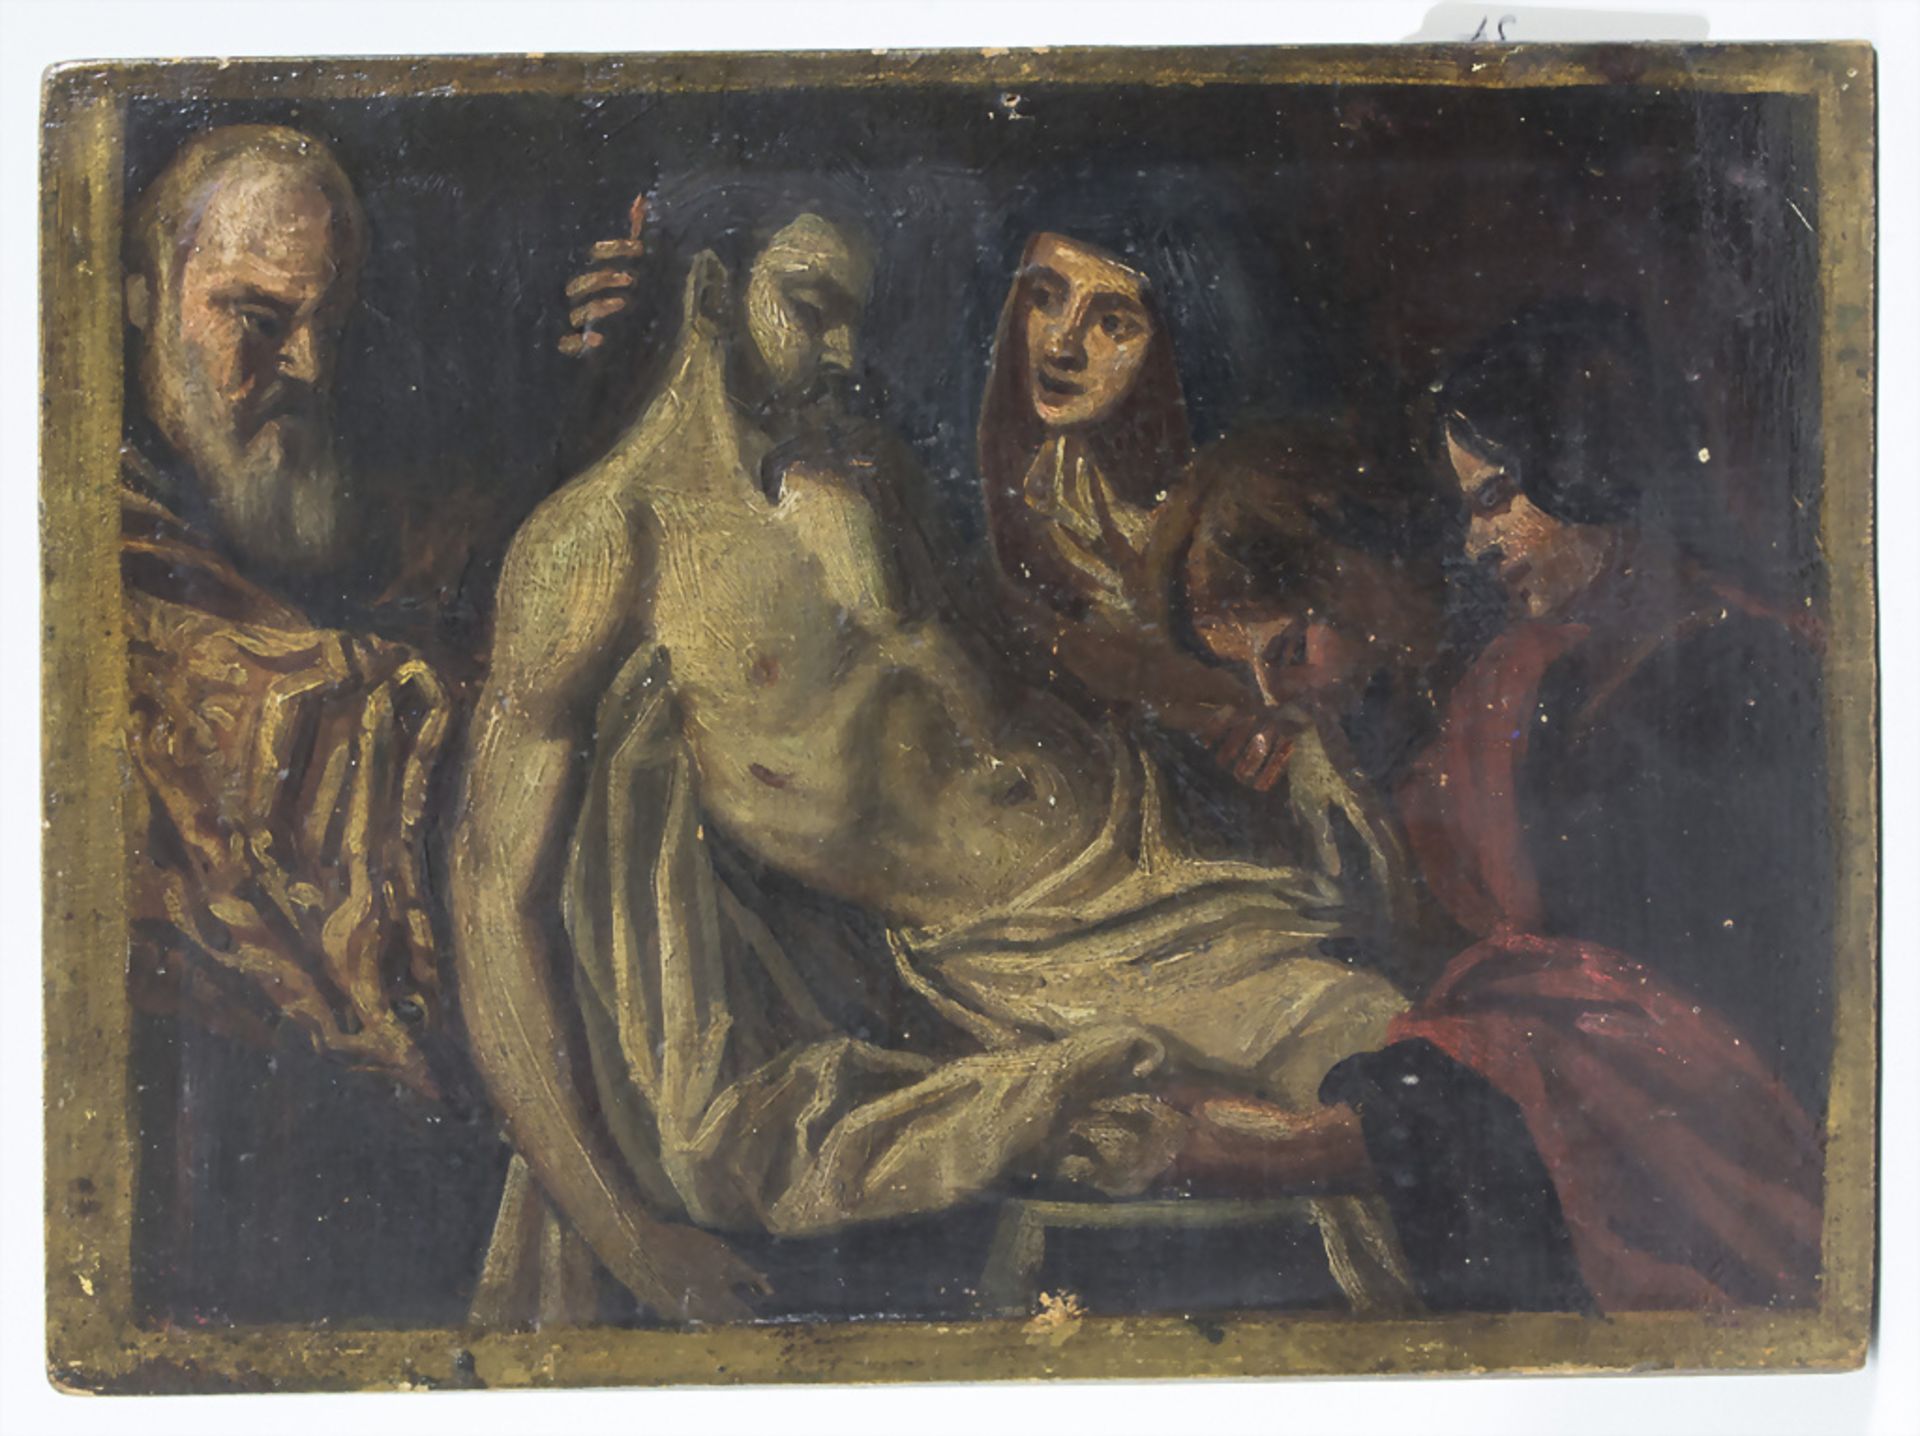 Künstler des 18. Jh., 'Beweinung Christi' / 'The Lamentation of Christ', 18. Jh.